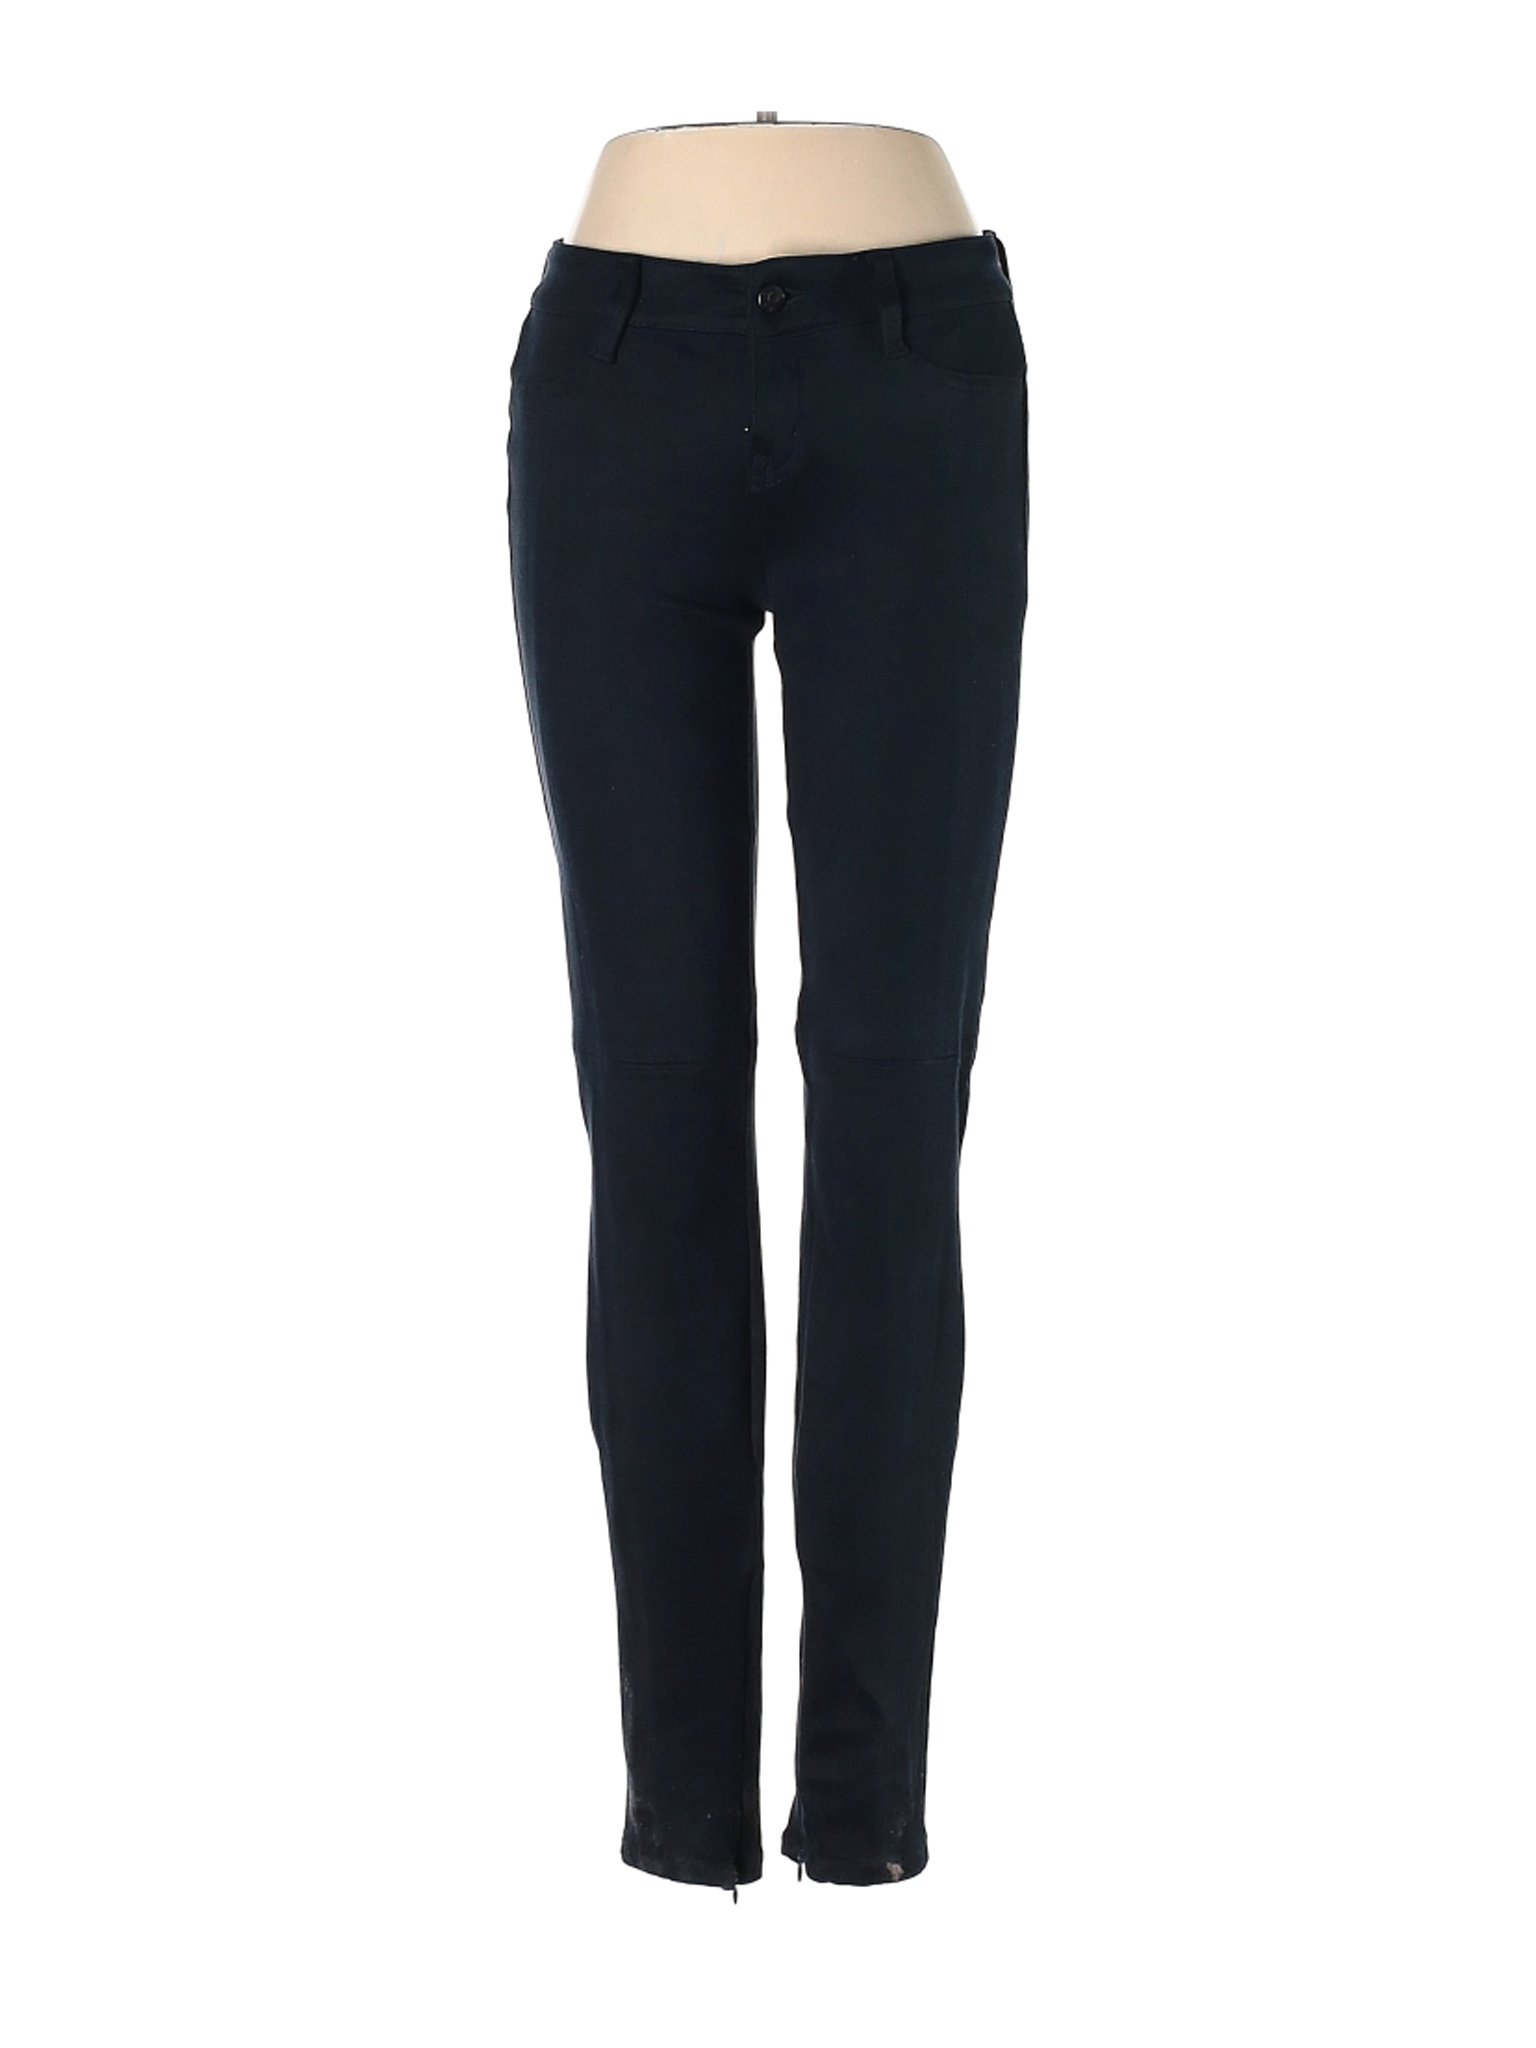 Level 99 Women Black Jeans 26W | eBay